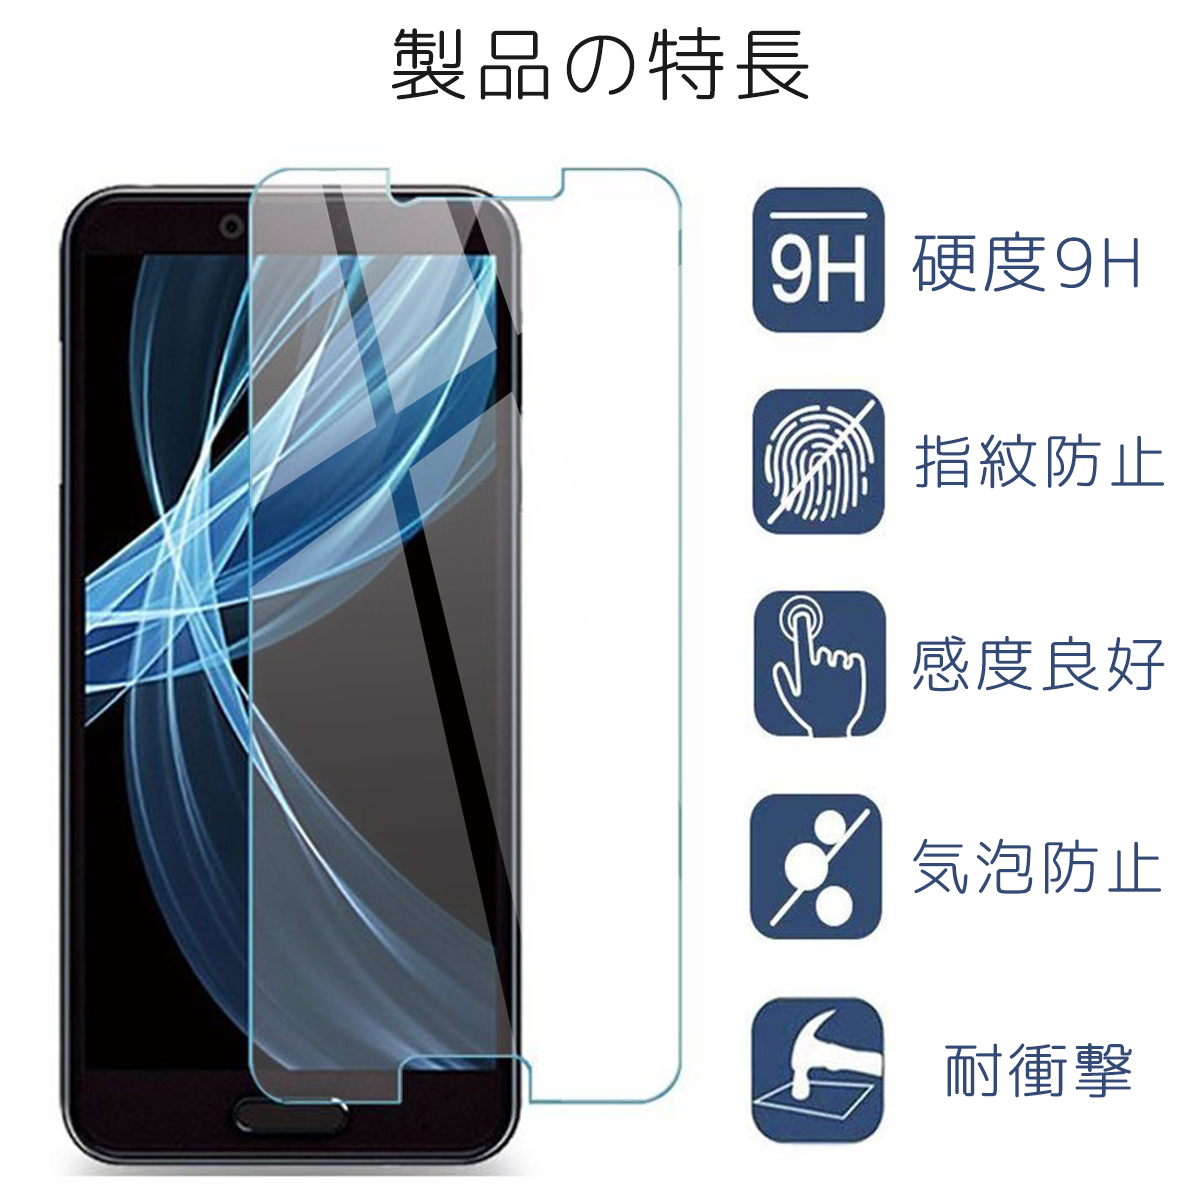 楽天市場 Aquos Sense Plus ガラス フィルム Android One X4 Sh M07 Sense 全面 液晶 画面 保護 2 5d 楽天モバイル アクオス スマホ Simフリー 保護フィルム ガラスフィルム 指紋 割れ 防止 衝撃 吸収 滑らか タッチ 感度 良好 耐衝撃 9h